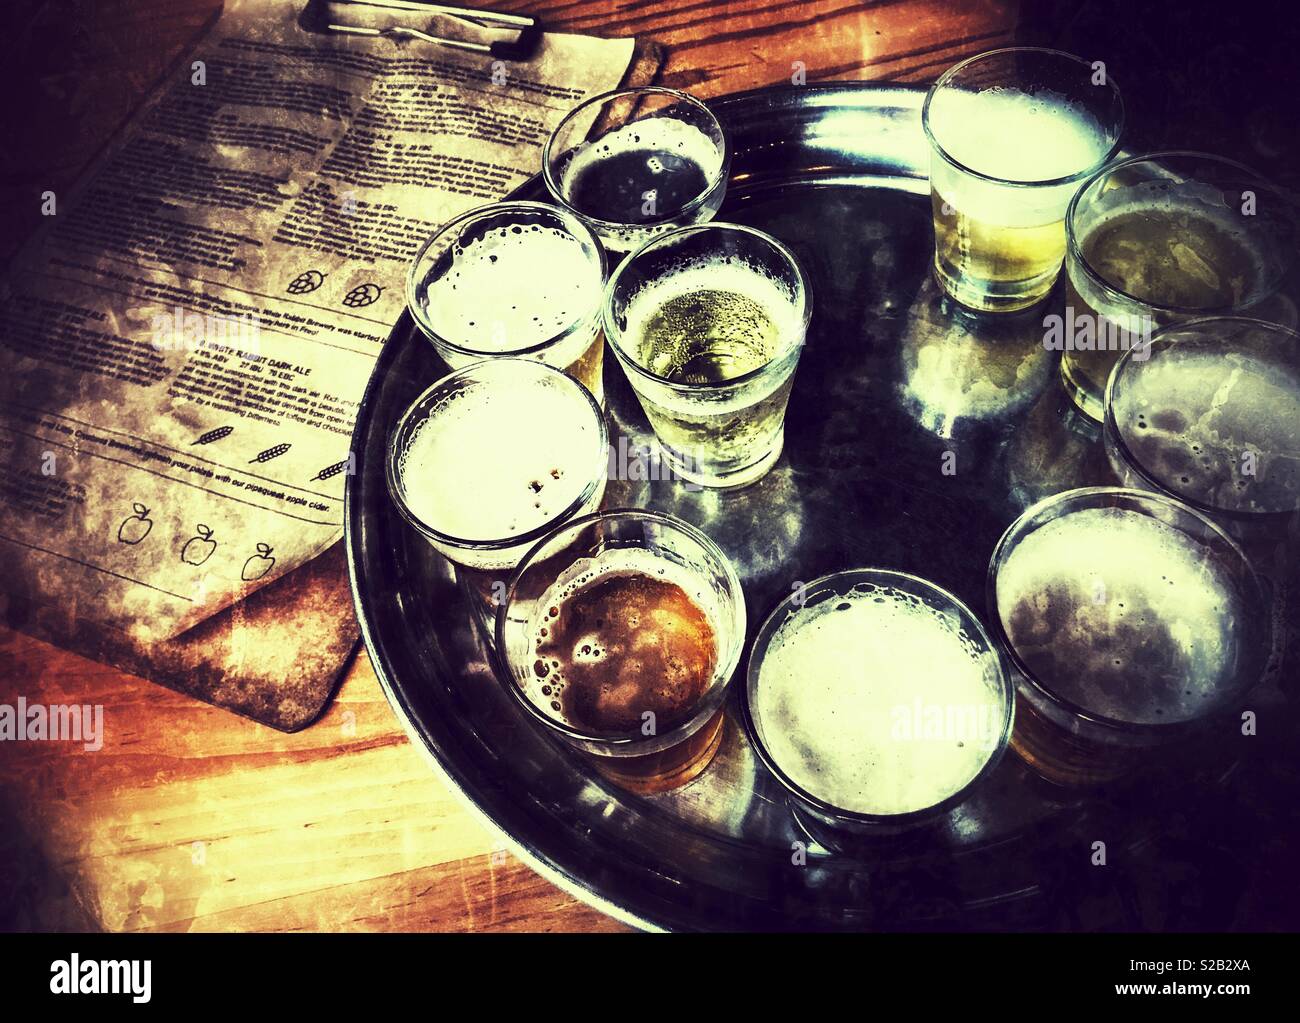 Beer tasting platter Stock Photo